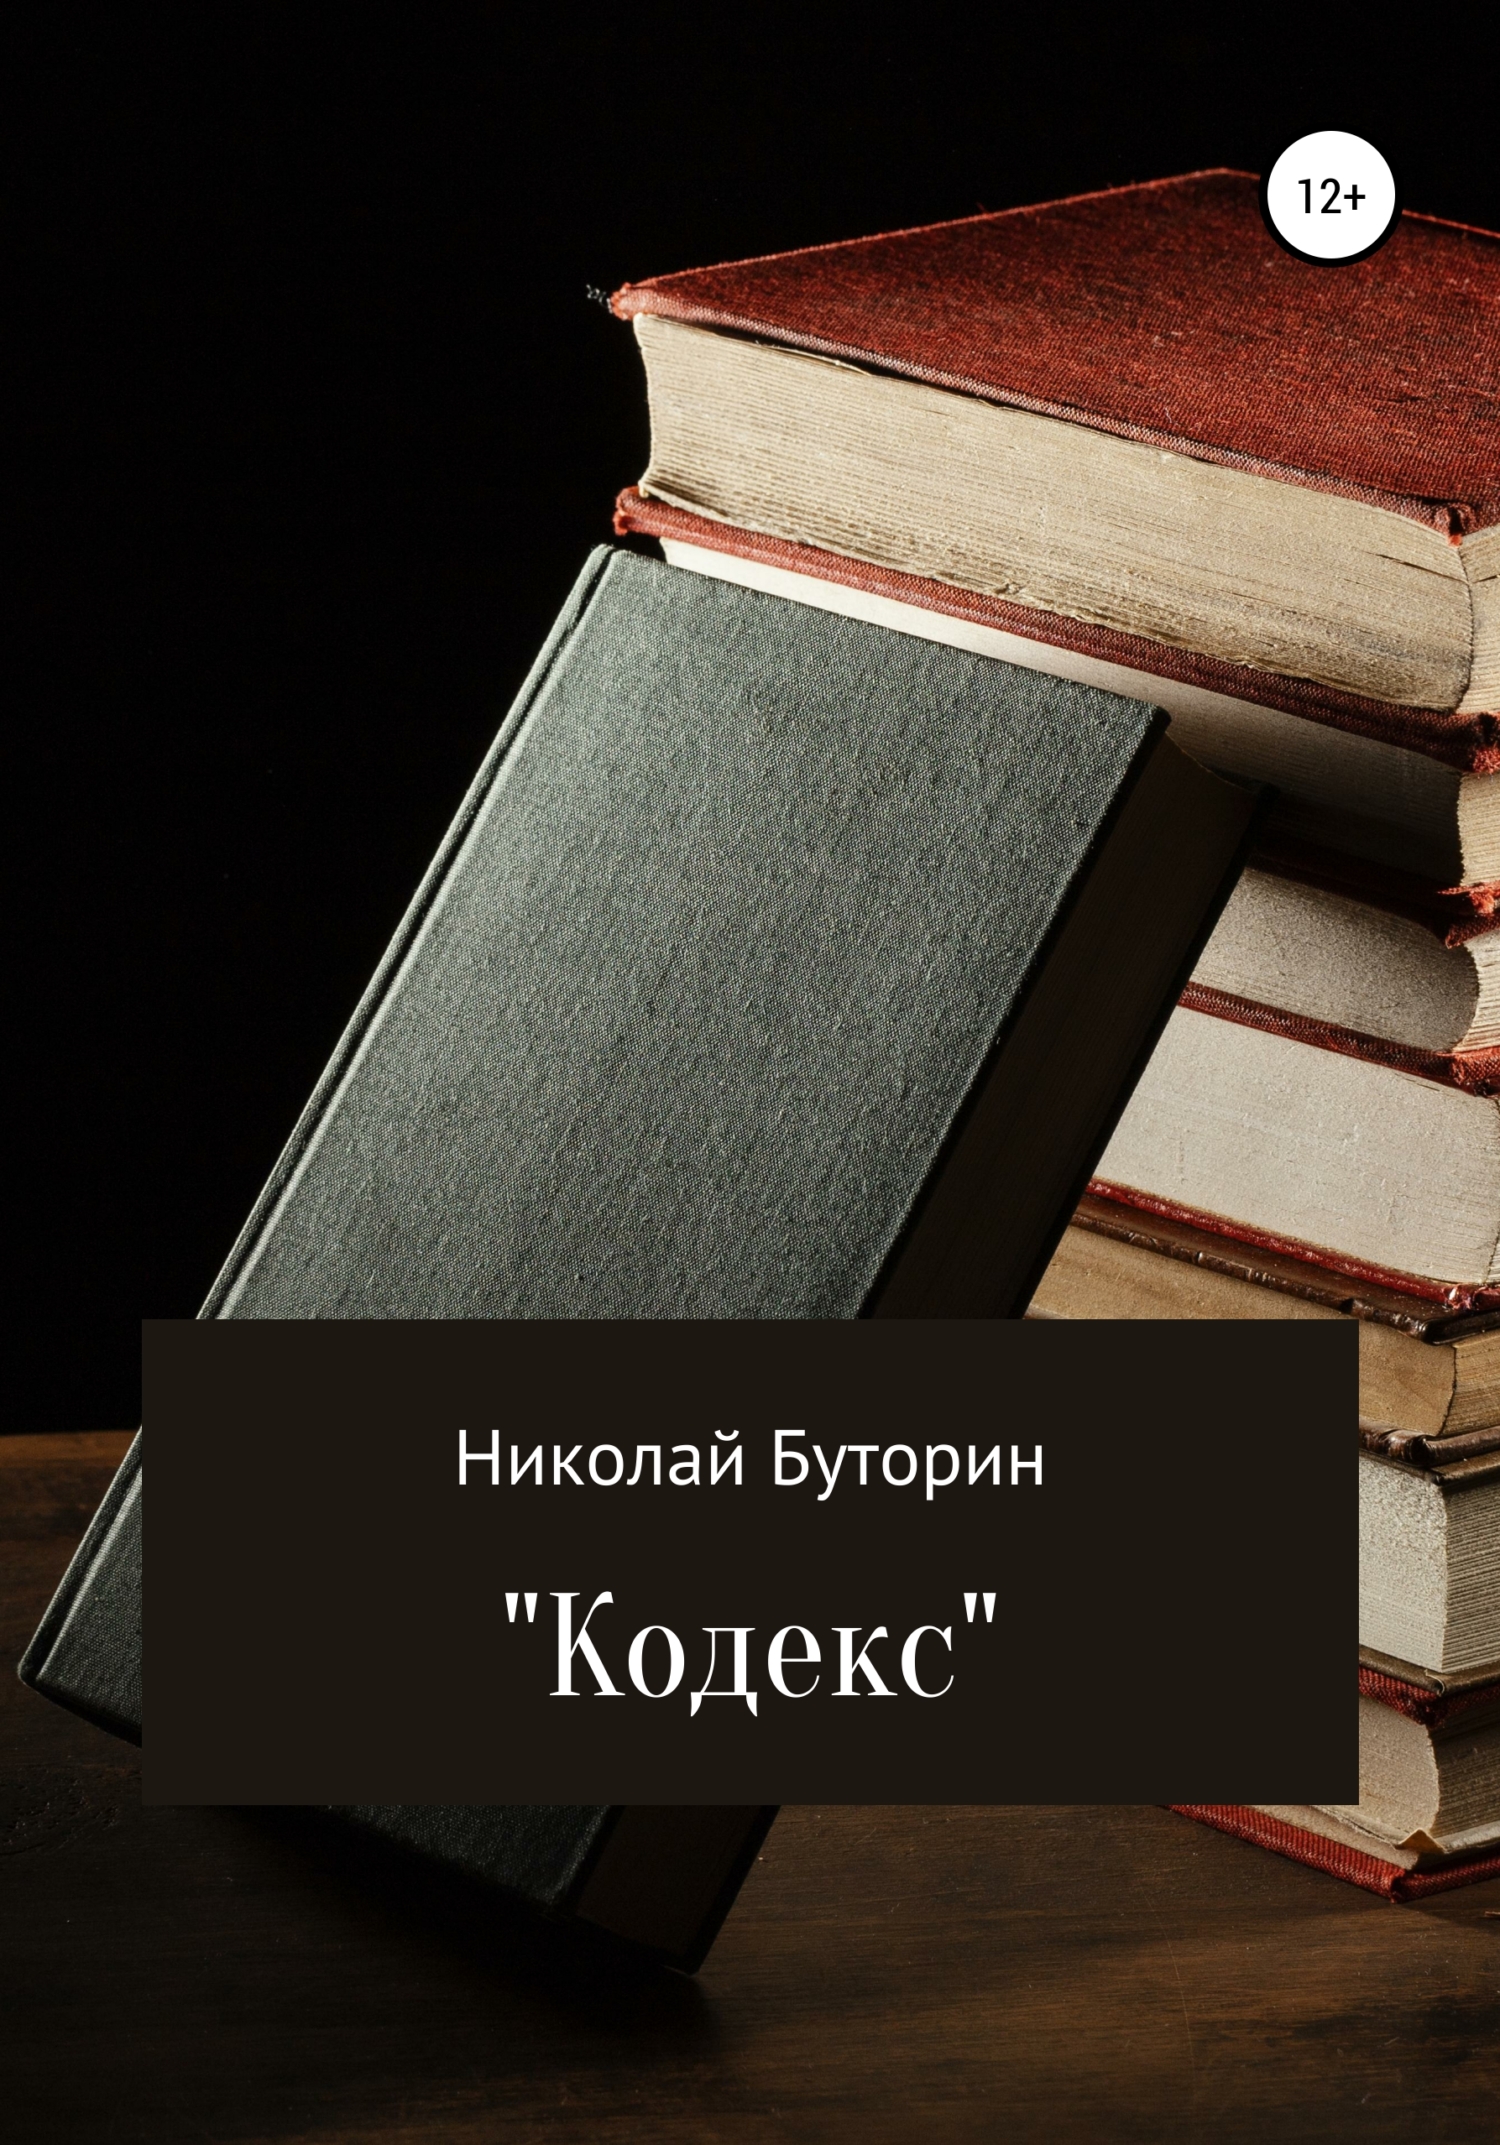 Кодекс - Николай Буторин